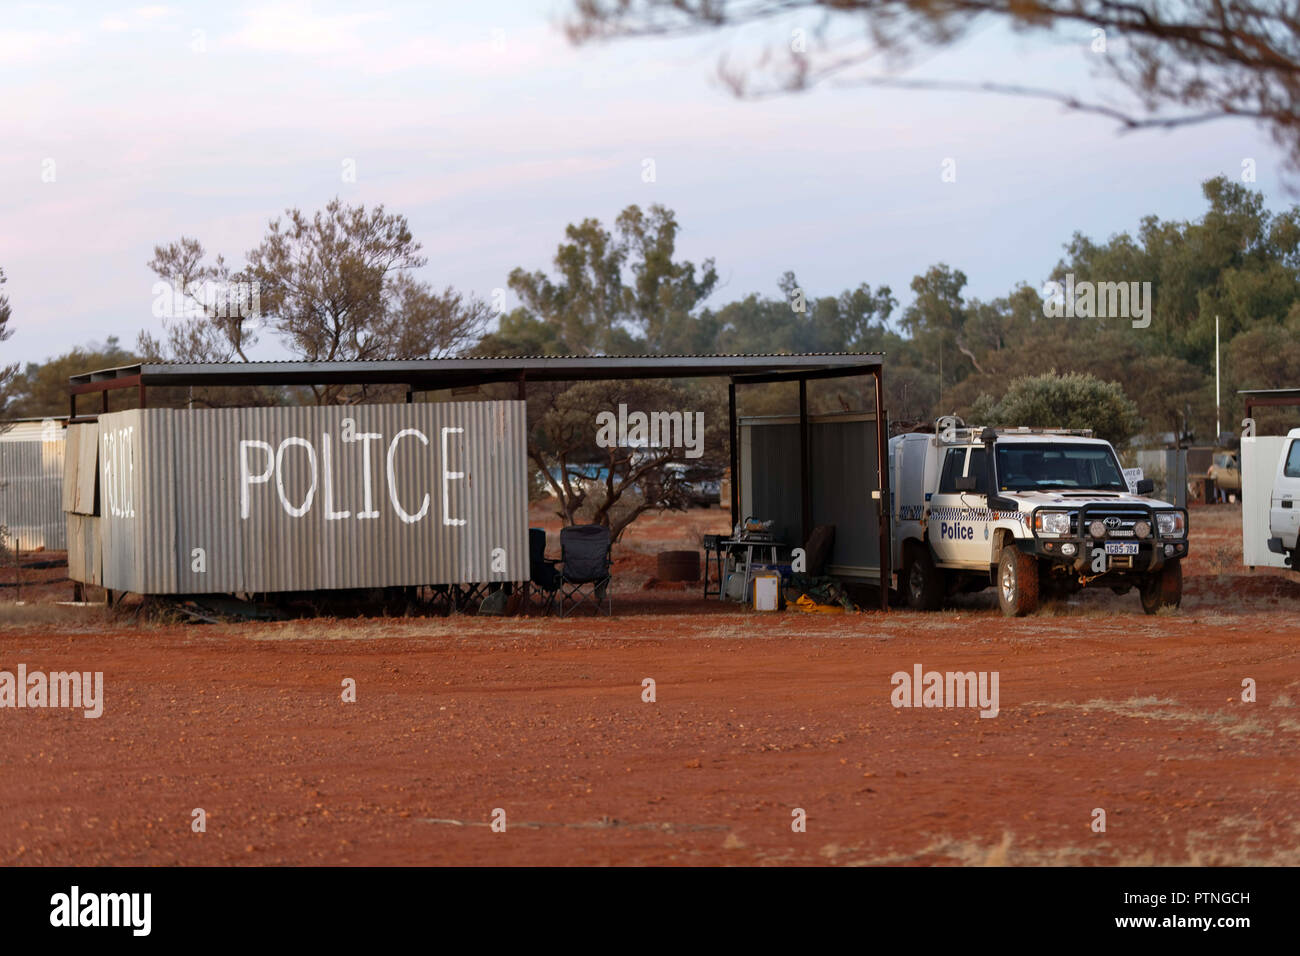 Campamento de la policía en las carreras de caballos de Bush en Landor, 1000km al norte de Perth, Australia Occidental. Foto de stock